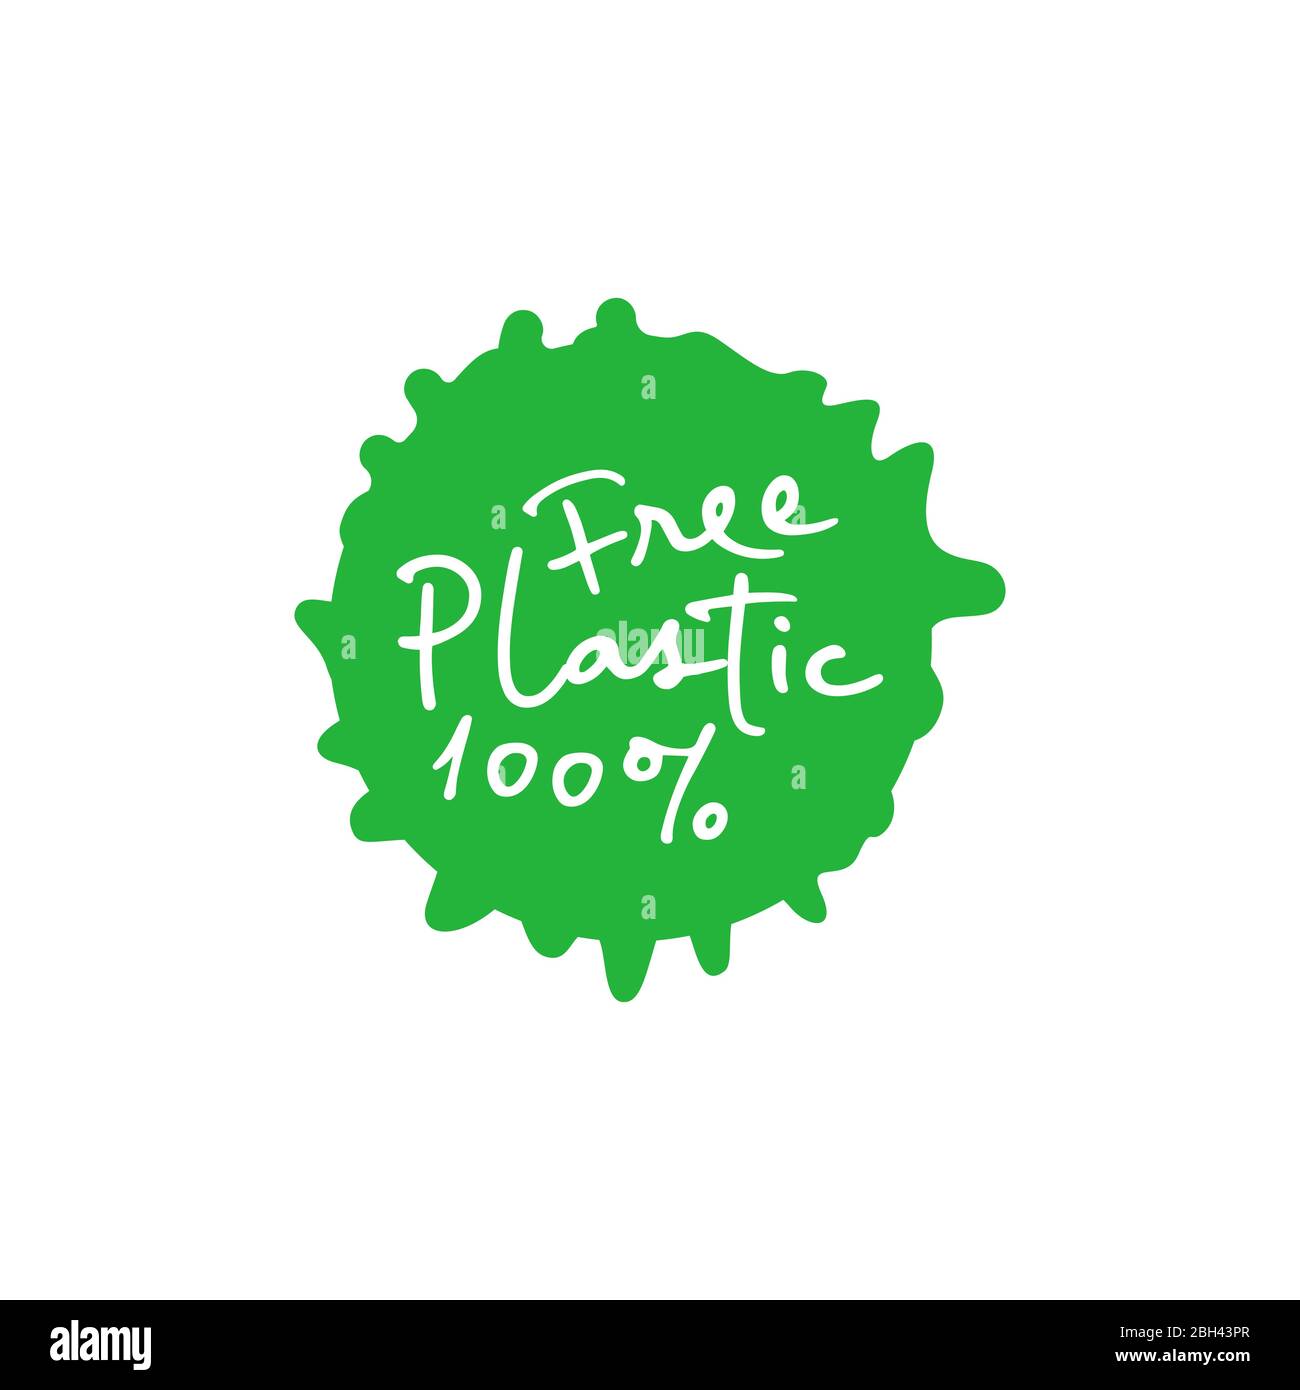 Plastic free 100 percent handwritten green emblem paint drop. Vector illustration. Stock Vector